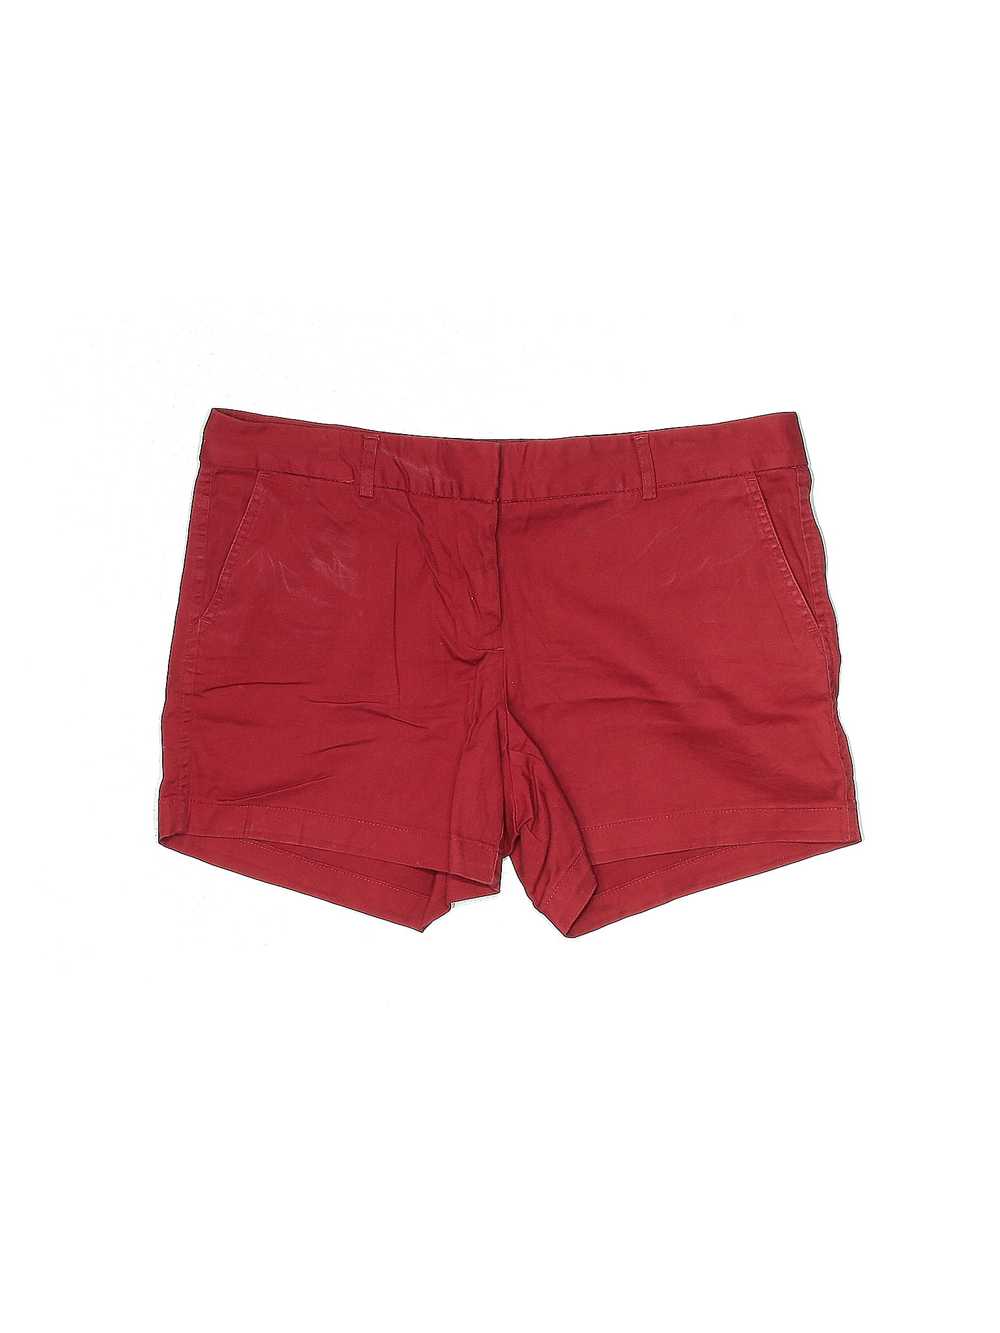 Land' n Sea Women Red Khaki Shorts 12 - image 1